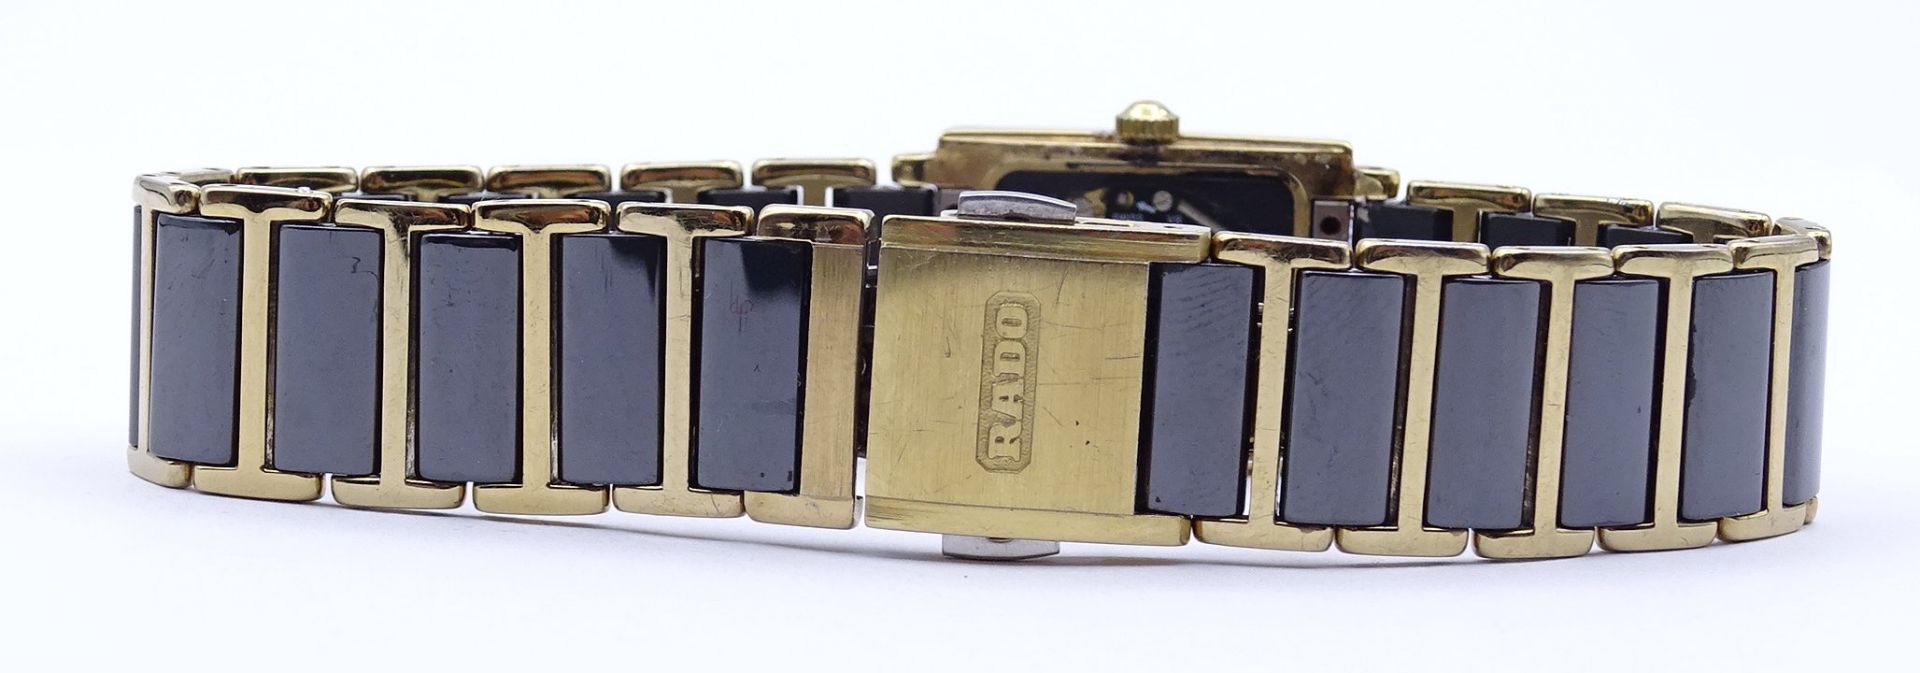 Damen Armbanduhr "Rado Diastar", Quartzwerk, Saphirglas, Keramikband,Gehäuse 18x22mm,Funktion nicht - Bild 4 aus 6